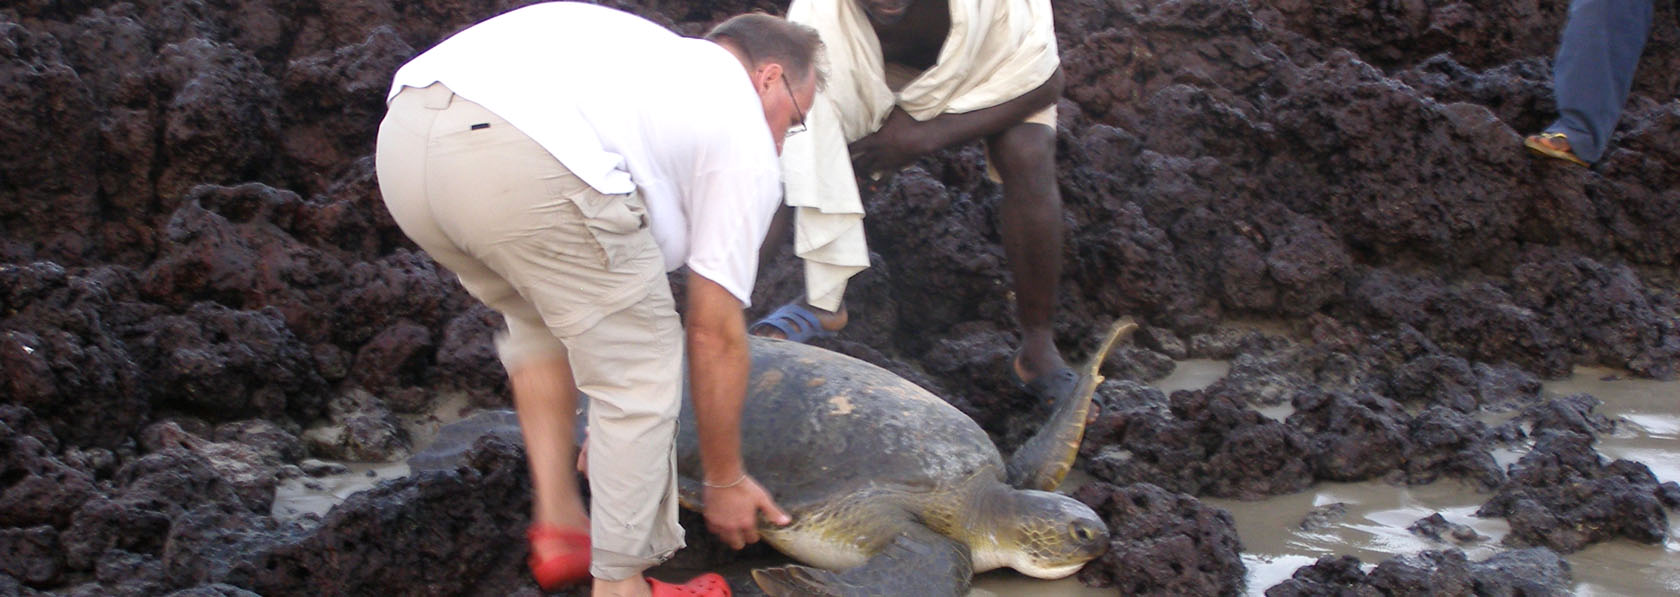 Tartaruga bébé salva por um ecoturista benevolente aquando do seu circuito de ecoturismo